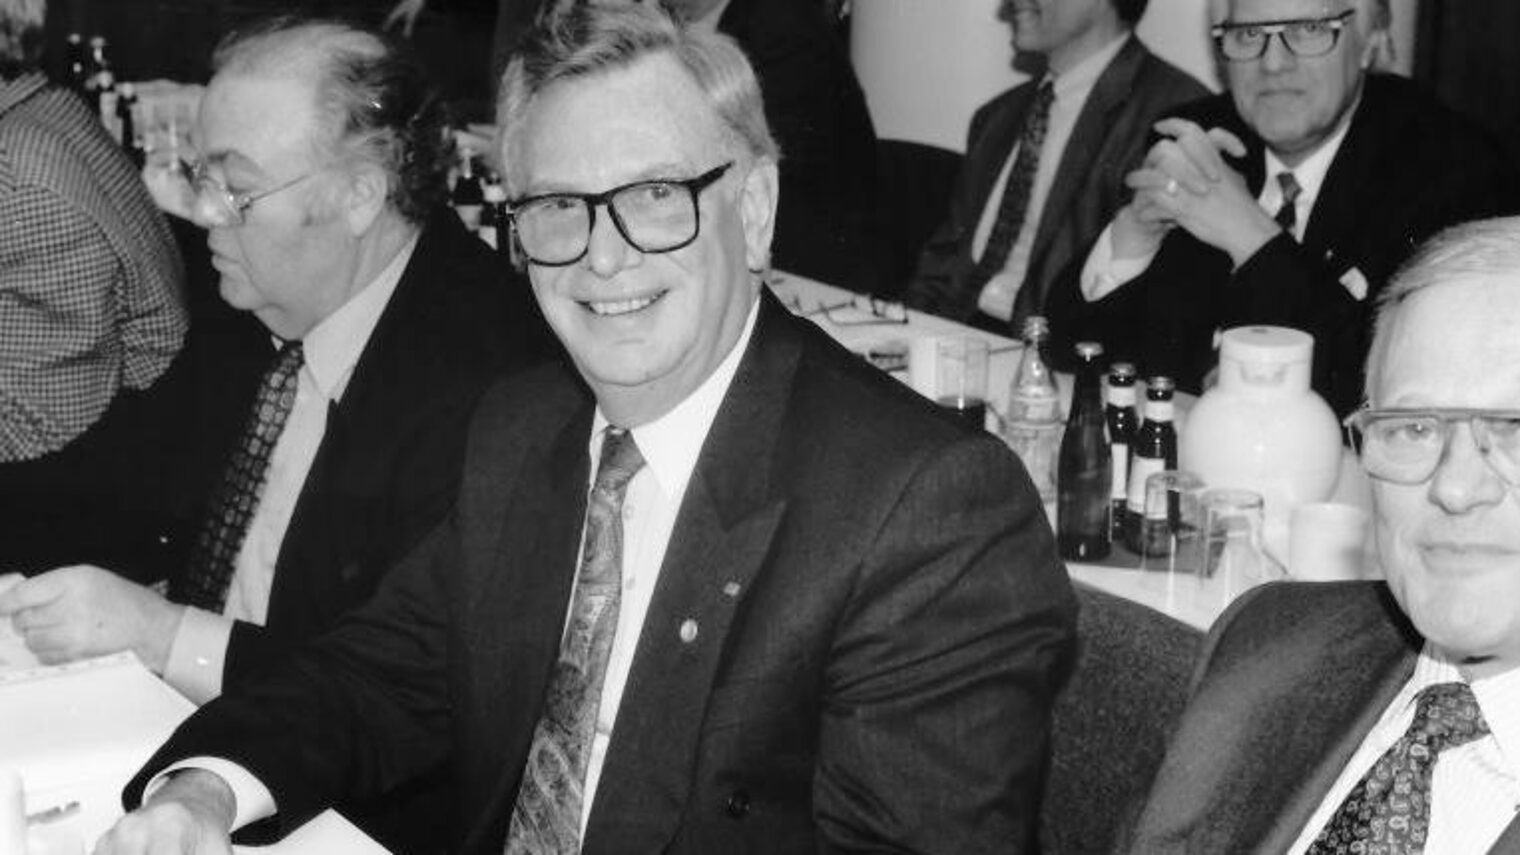 Franz Püll auf der konstituierenden Vollversammlung der Handwerkskammer im Jahr 1992